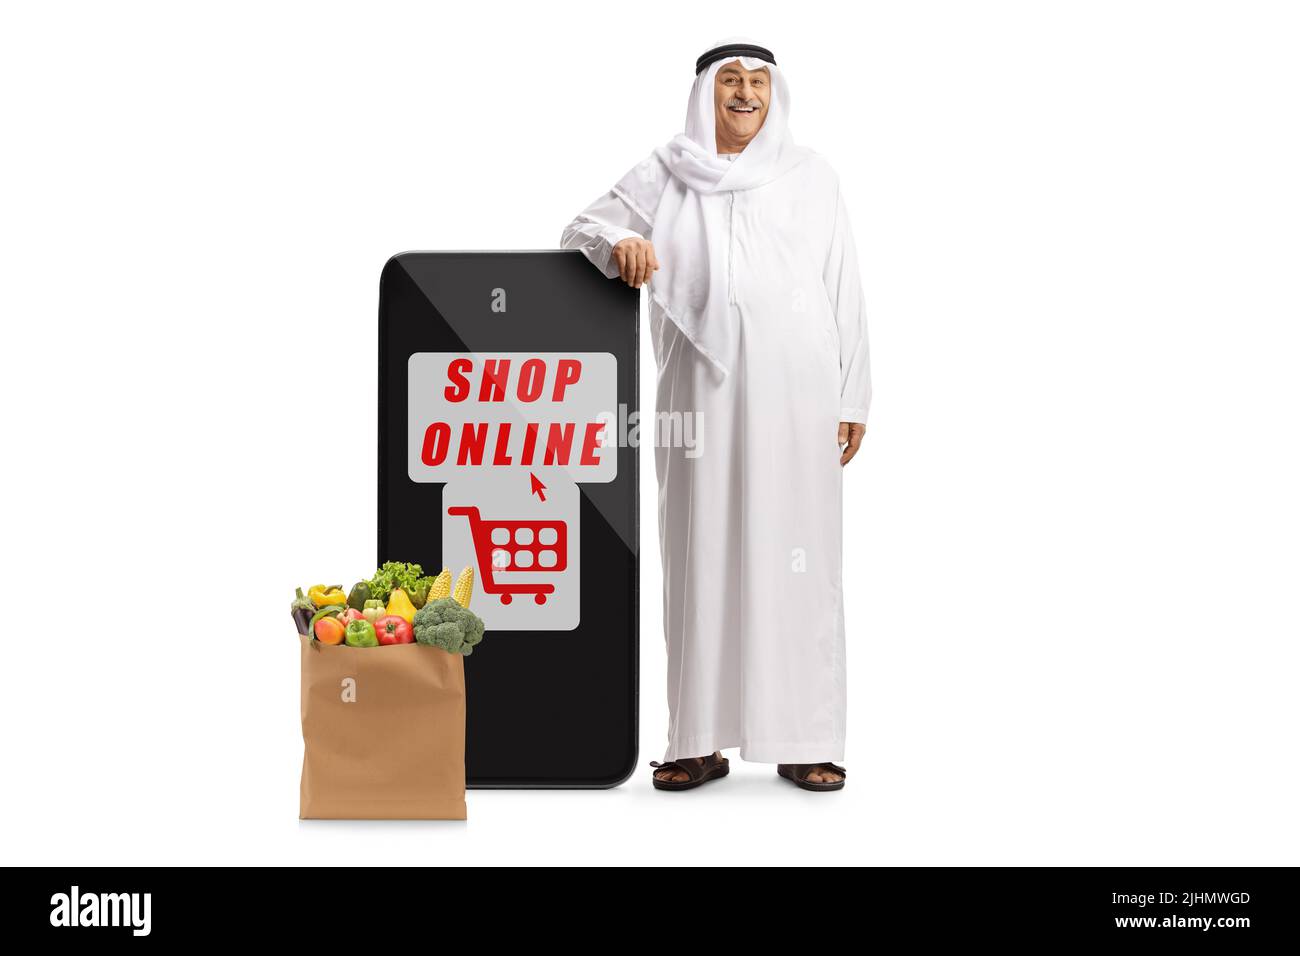 Uomo arabo in abiti etnici appoggiati su un telefono cellulare e una borsa di alimentari, negozio online concetto, isolato su sfondo bianco Foto Stock